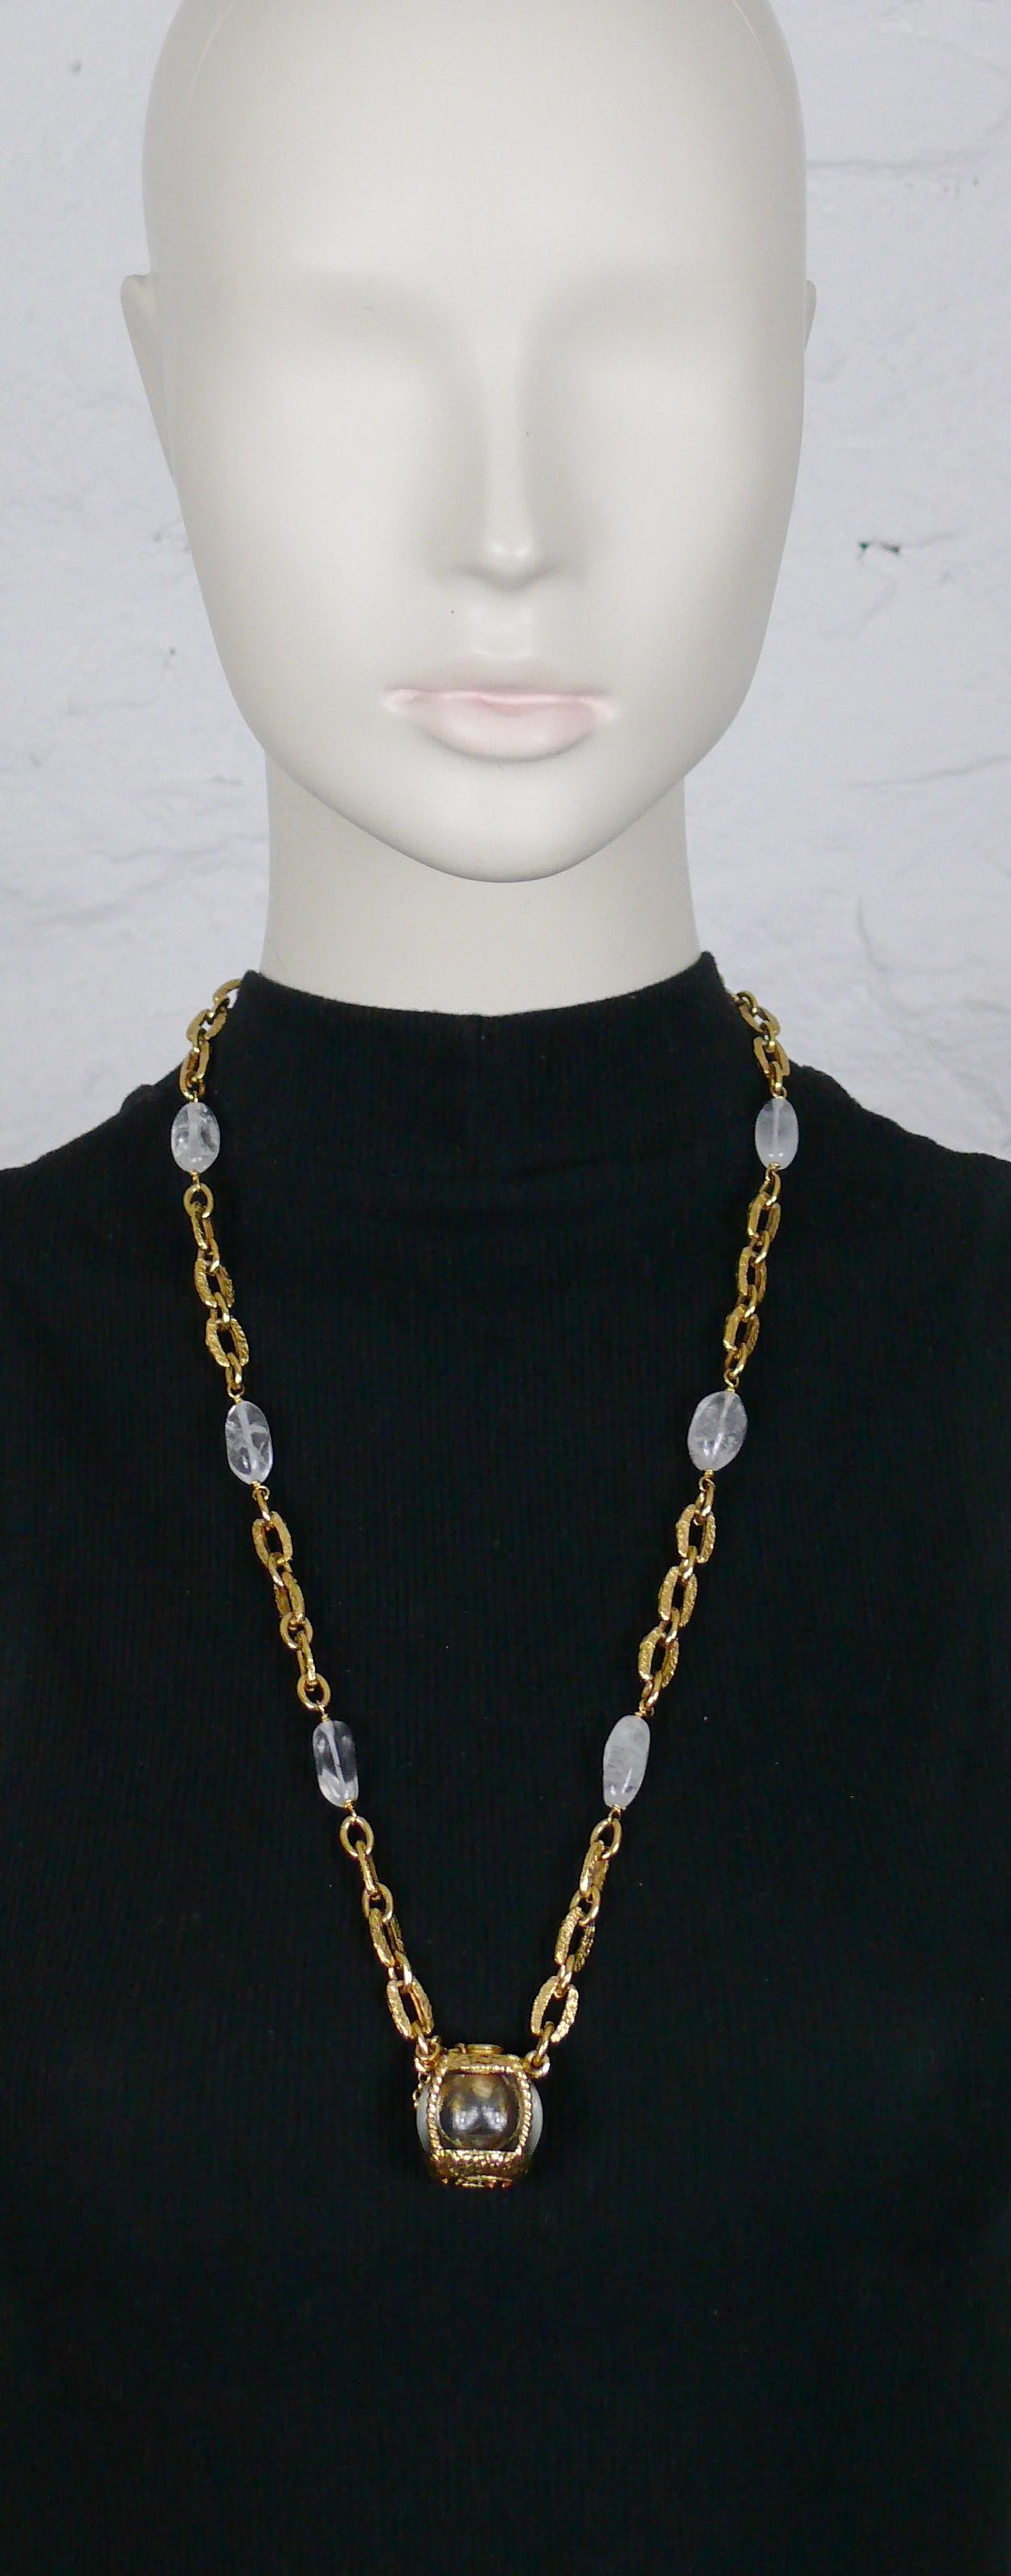 Rare collier vintage YVES SAINT LAURENT créé pour le lancement du parfum CHAMPAGNE par ROBERT GOOSSENS.

Ce collier à maillons texturés est agrémenté de perles en cristal de roche et d'un pendentif miniature en forme de bouteille CHAMPAGNE dans un